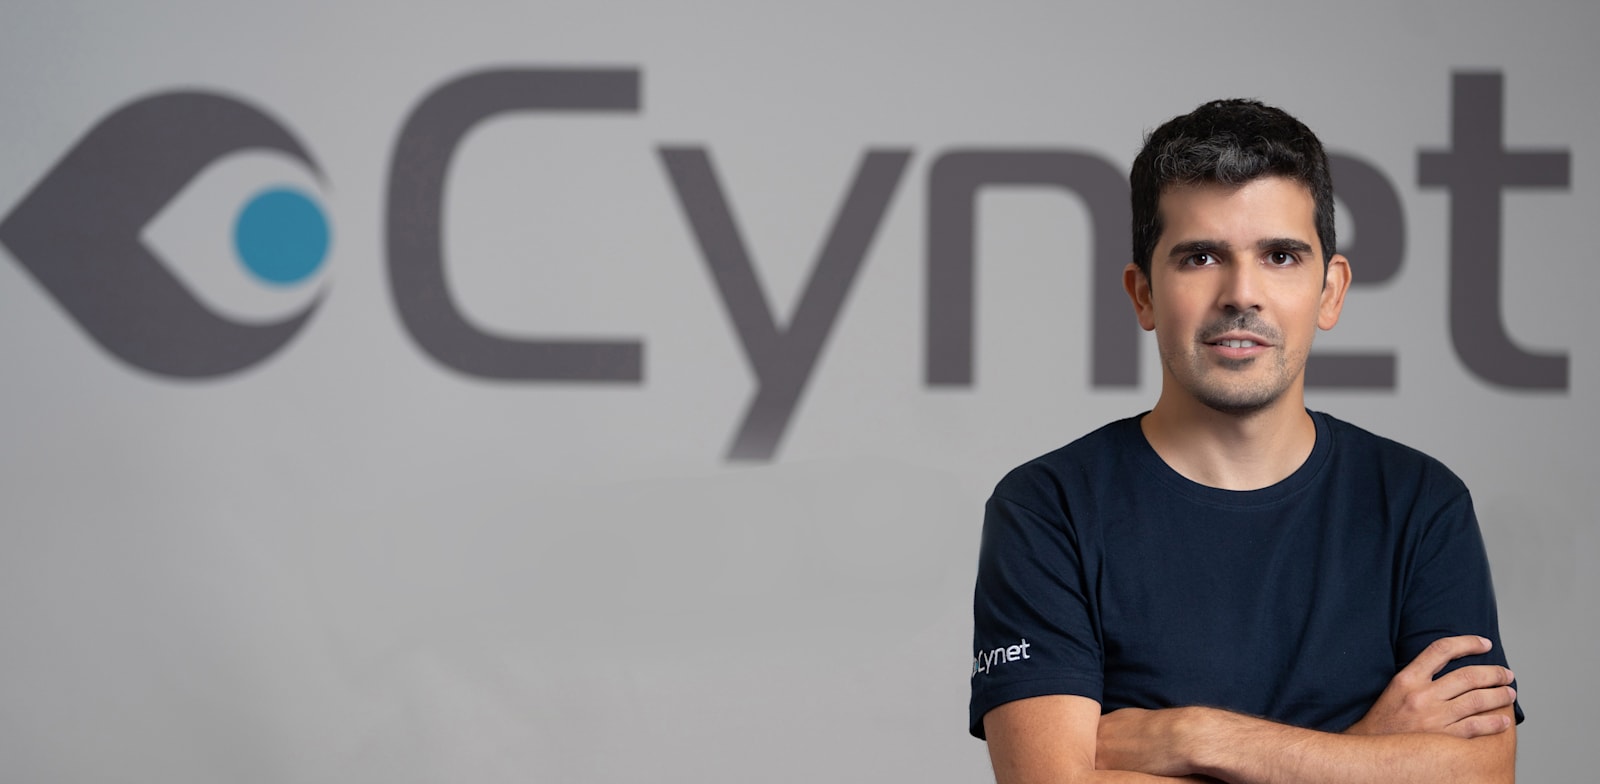 אייל גרונר, מנכ''ל ומייסד Cynet / צילום: רמי זרנגר